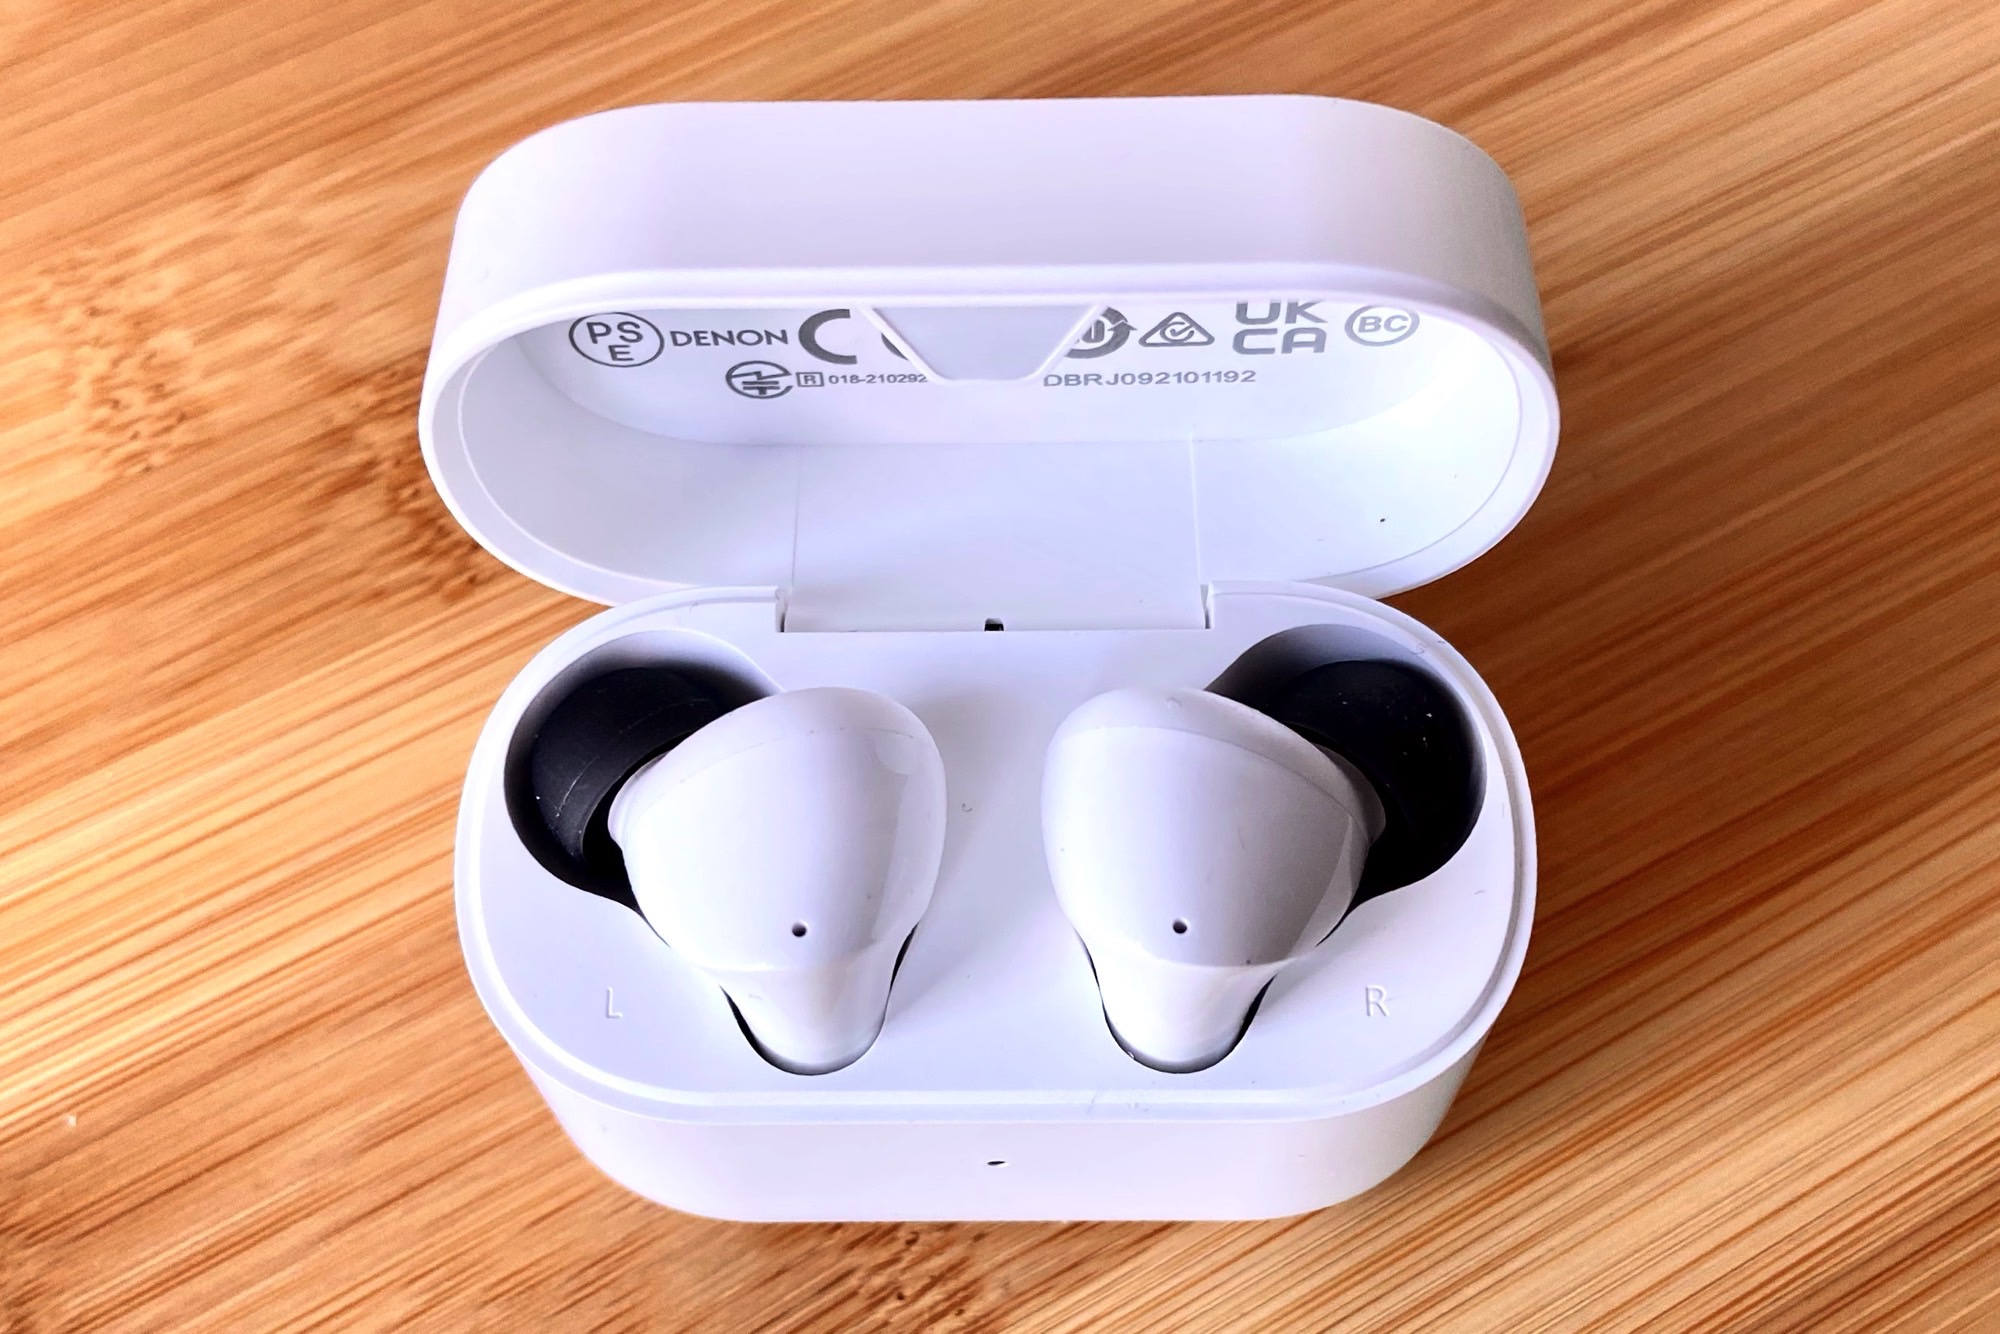 Denon Noise Cancelling Earbuds - True Wireless In-Ear Headphones